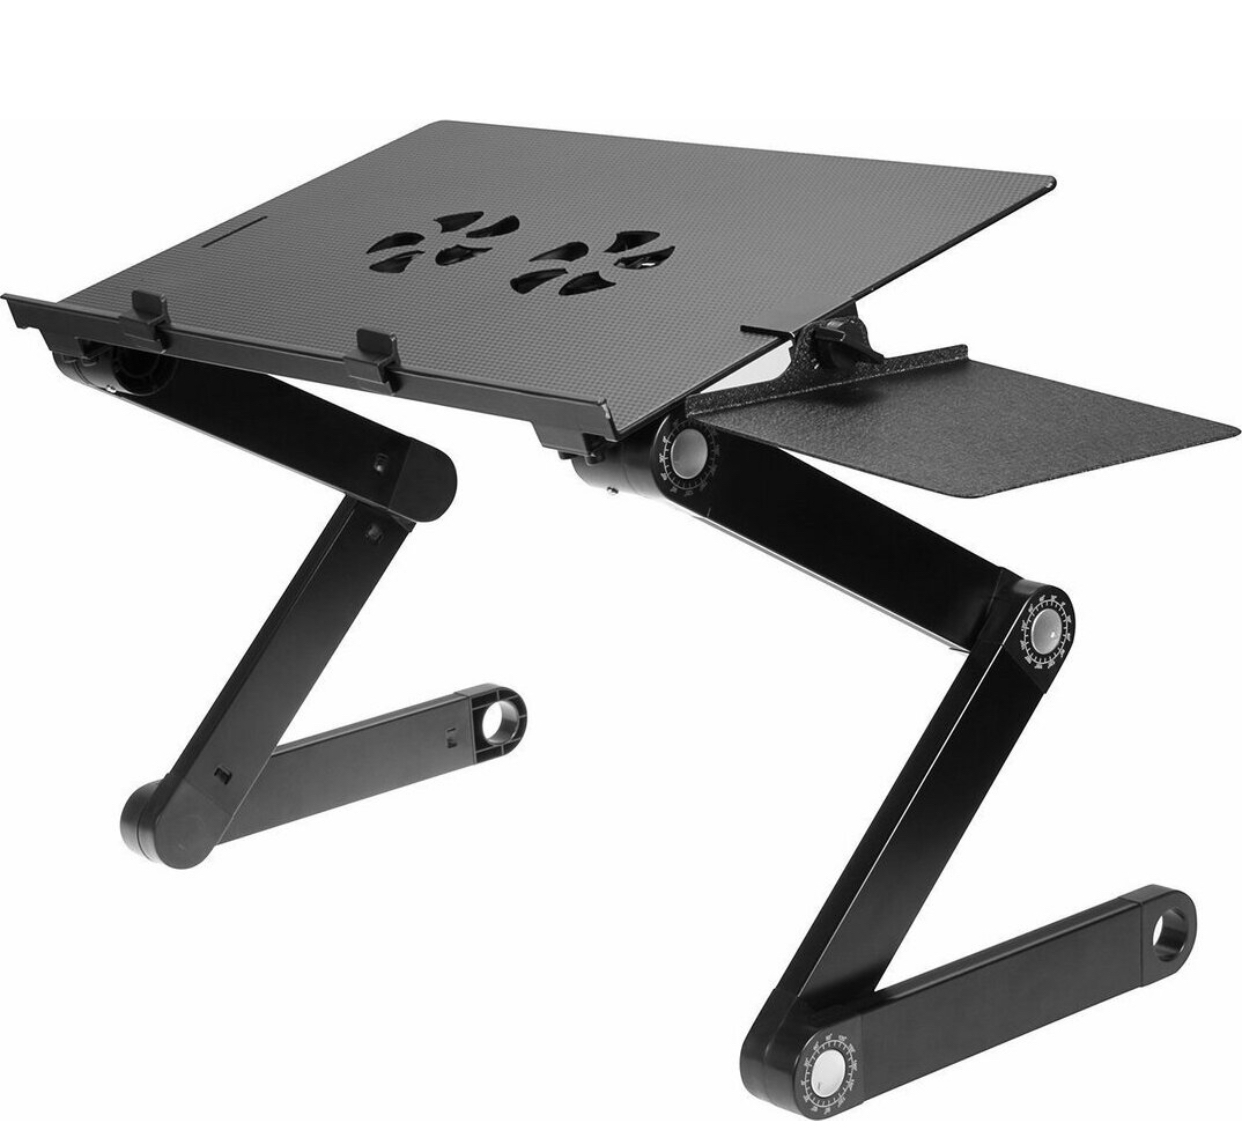 раздвижной столик для ноутбука